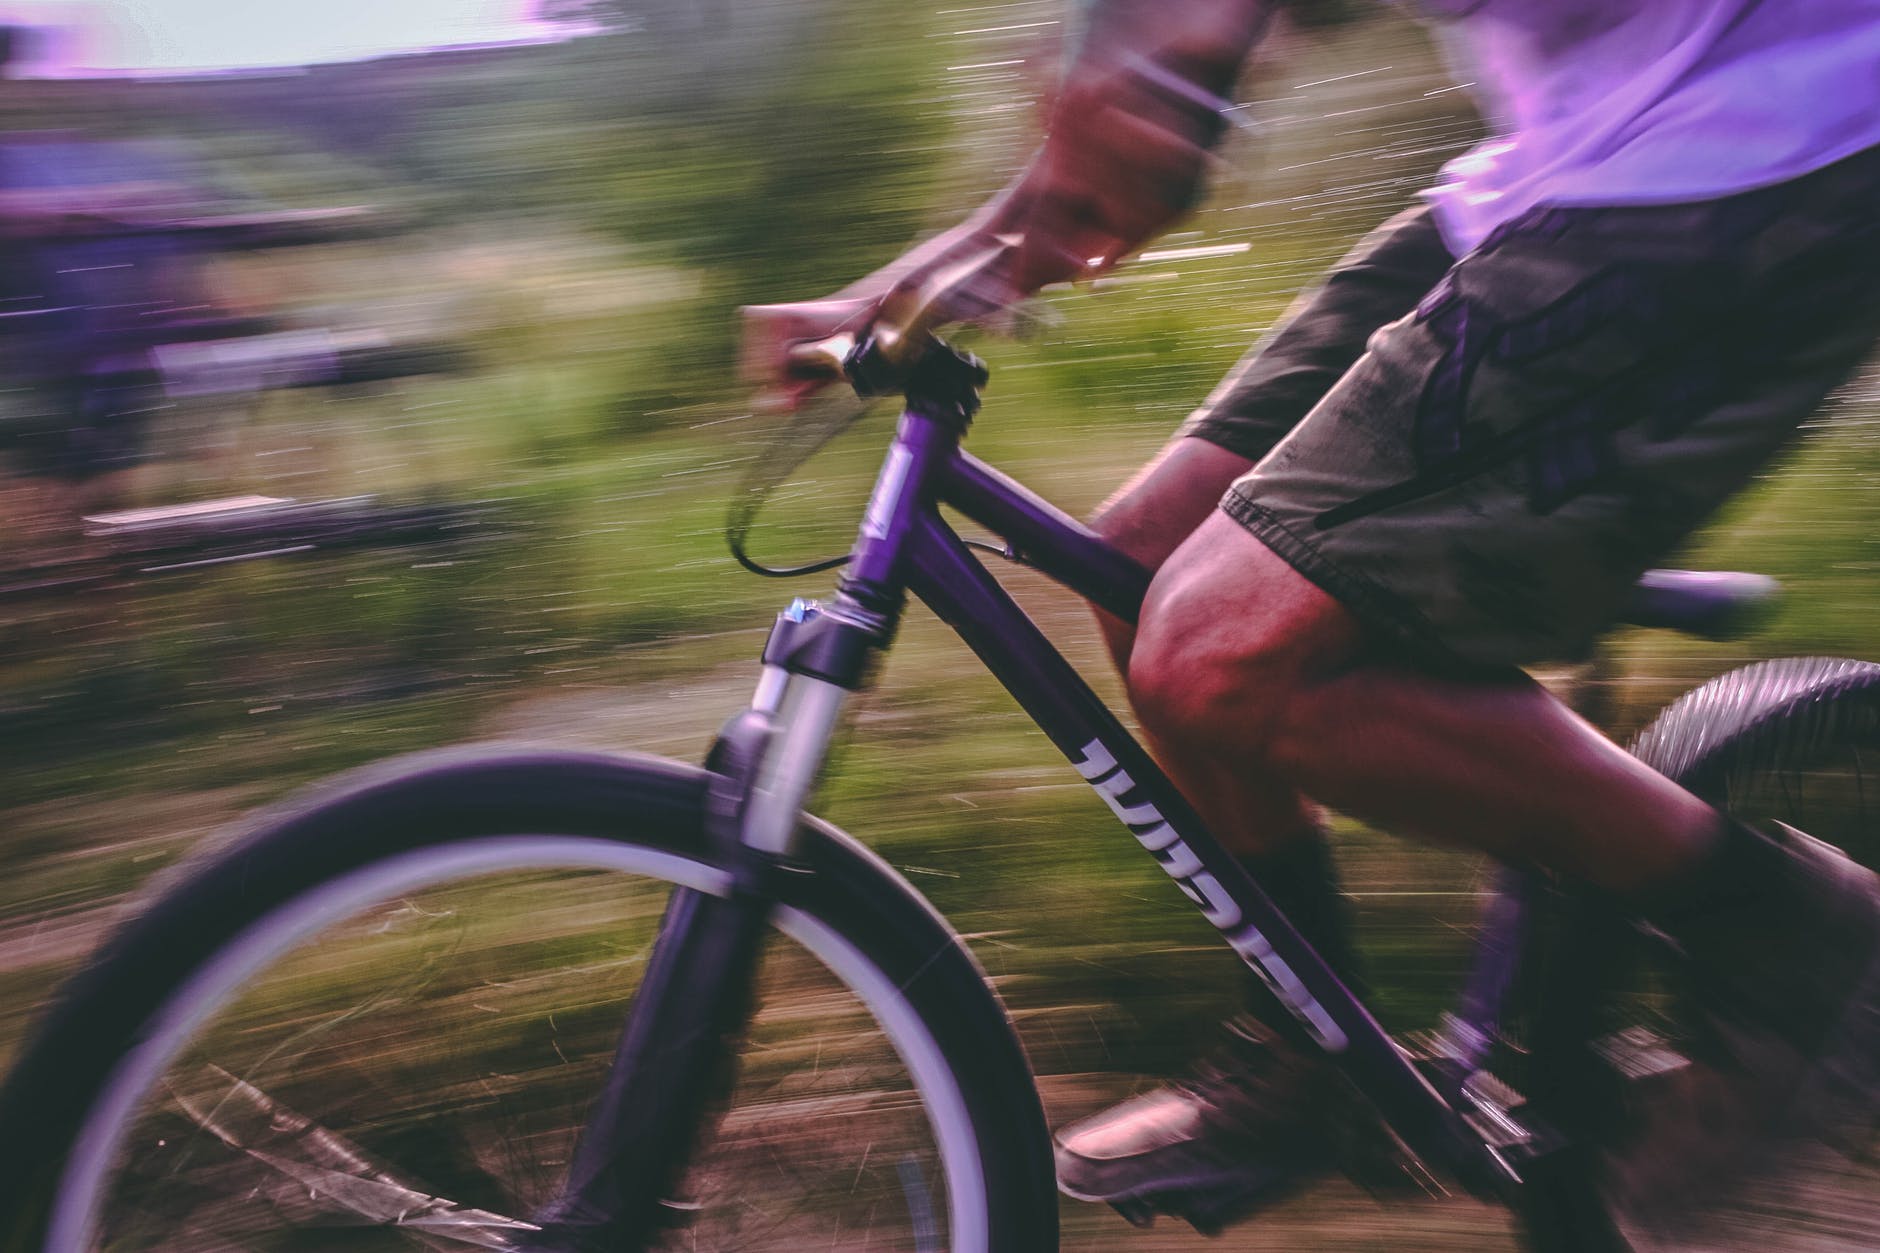 O que a Keepsporting pode ajudar no seu evento de Mountain Bike?